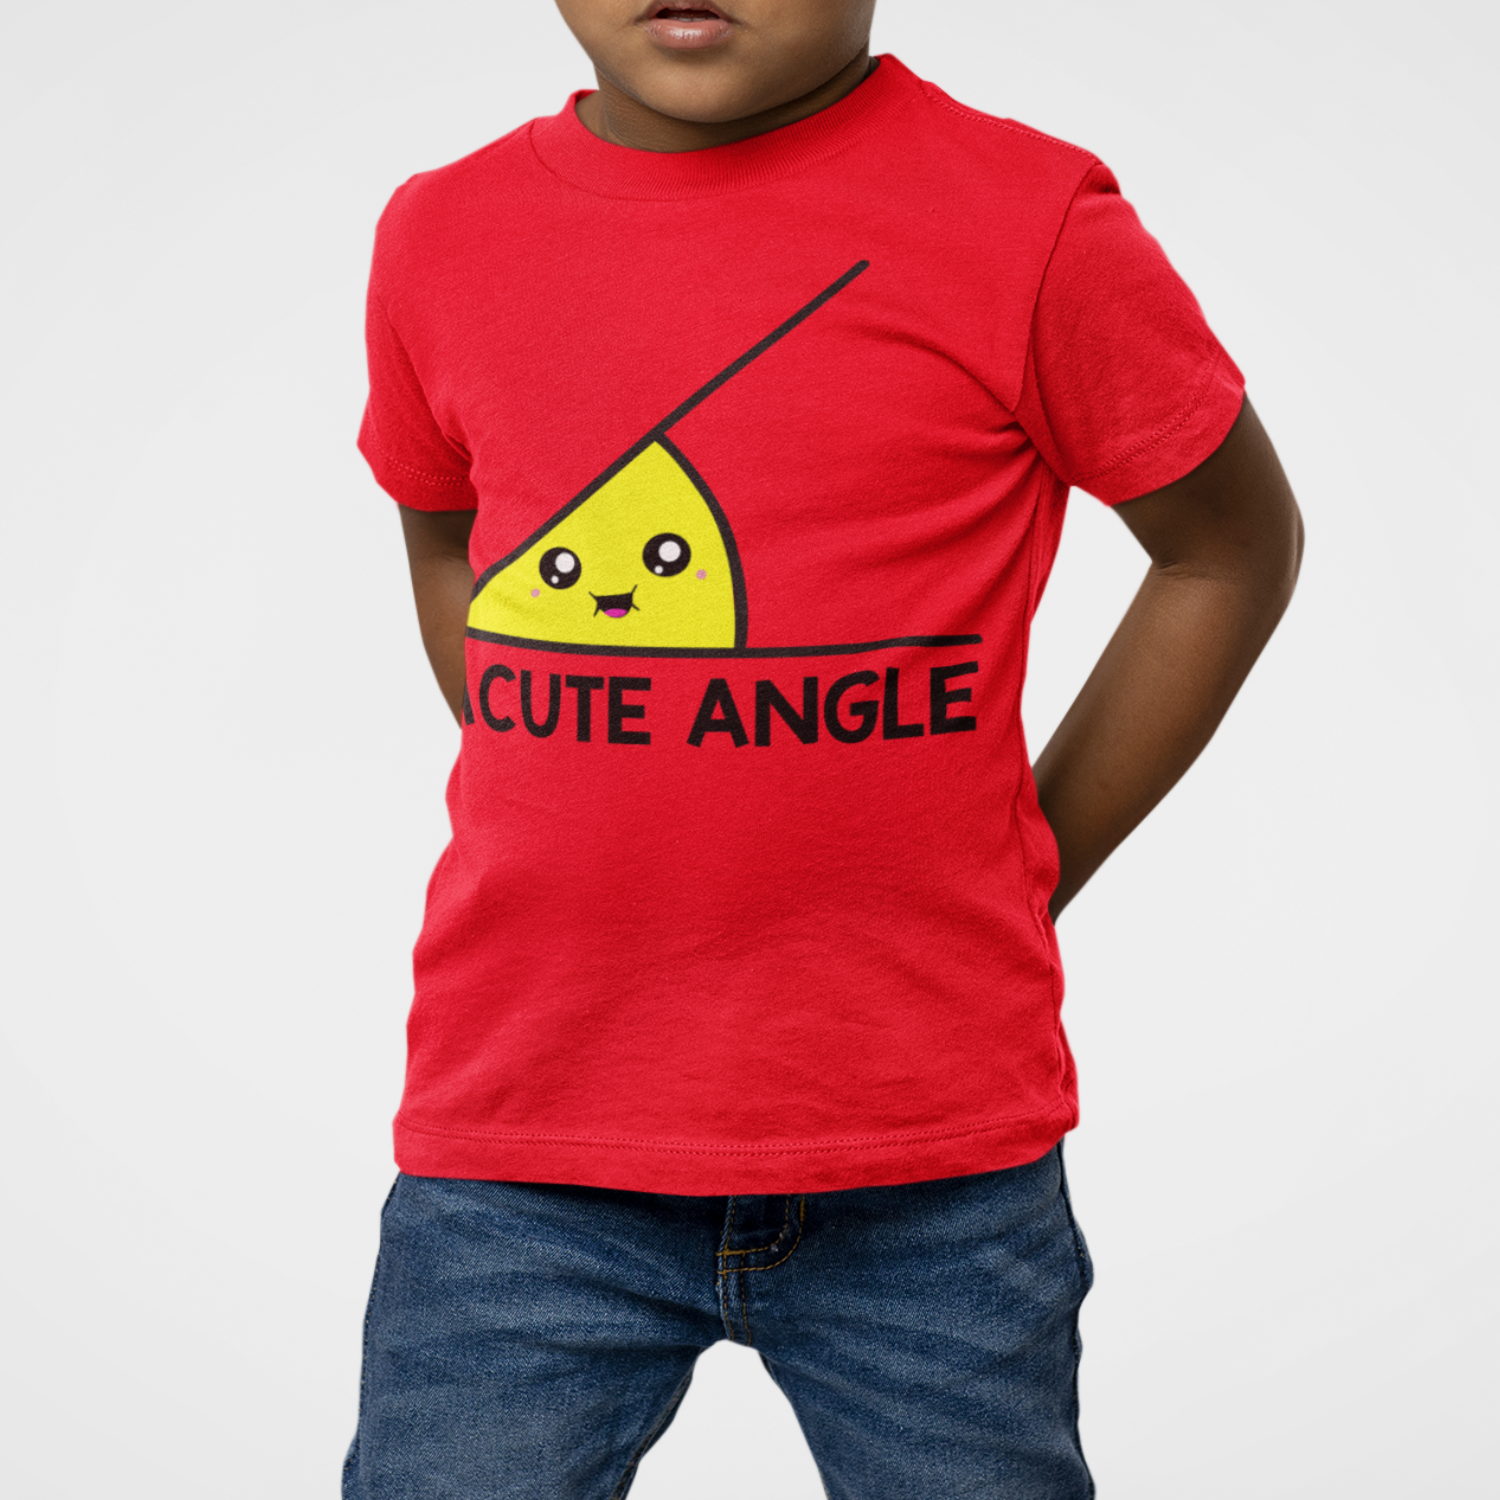 Acute Angle Kids T Shirt